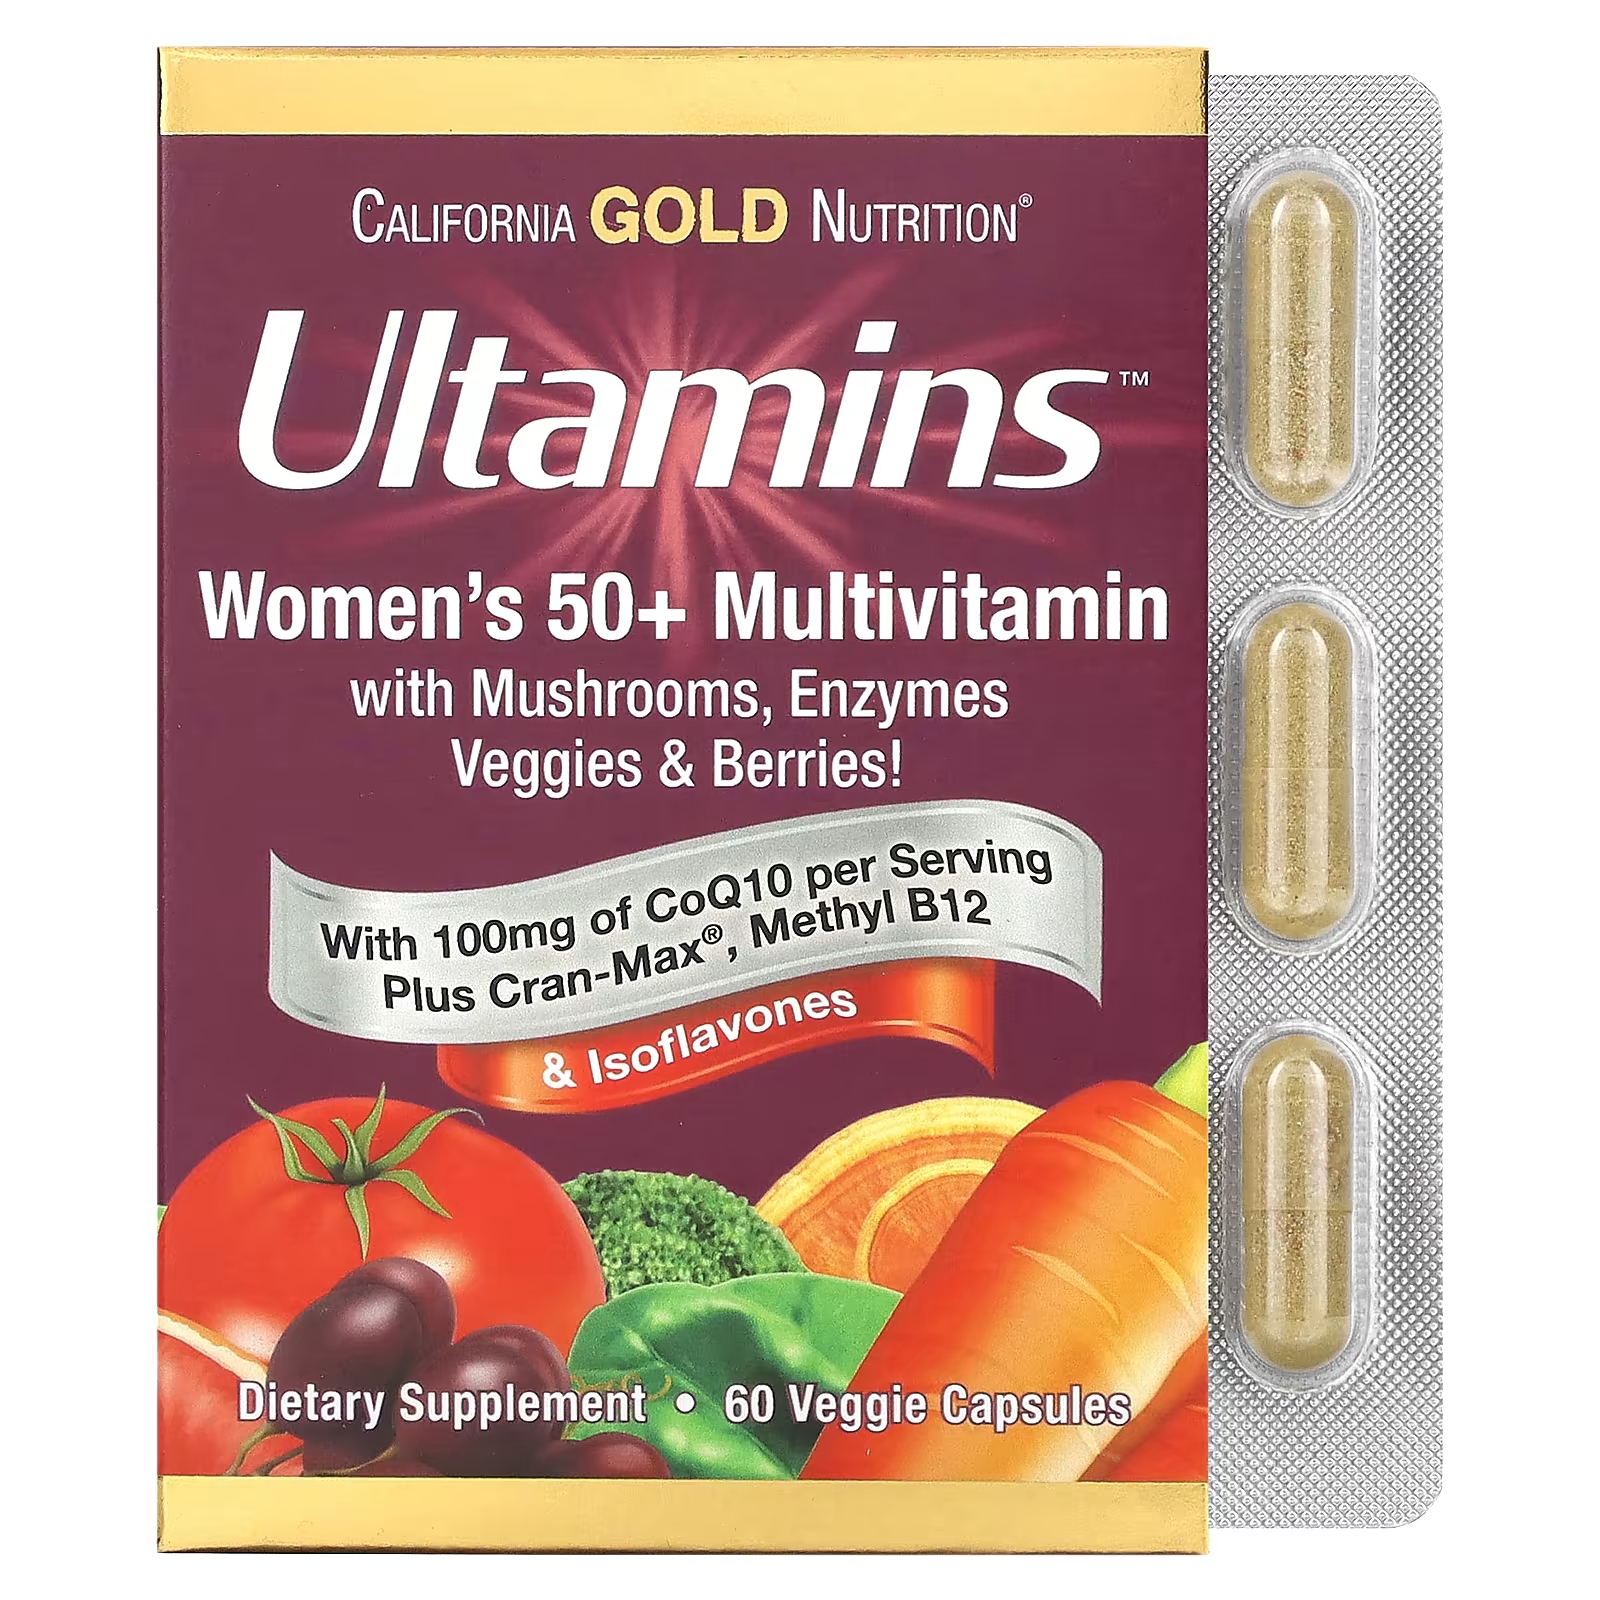 Мультивитамины California Gold Nutrition Ultamins для женщин старше 50 лет с коэнзимом Q10, грибами, ферментами, овощами и ягодами, 60 растительных капсул ultamins мультивитаминный комплекс для женщин старше 50 лет с коэнзимом q10 грибами ферментами овощами и ягодами 60 растительных капсул